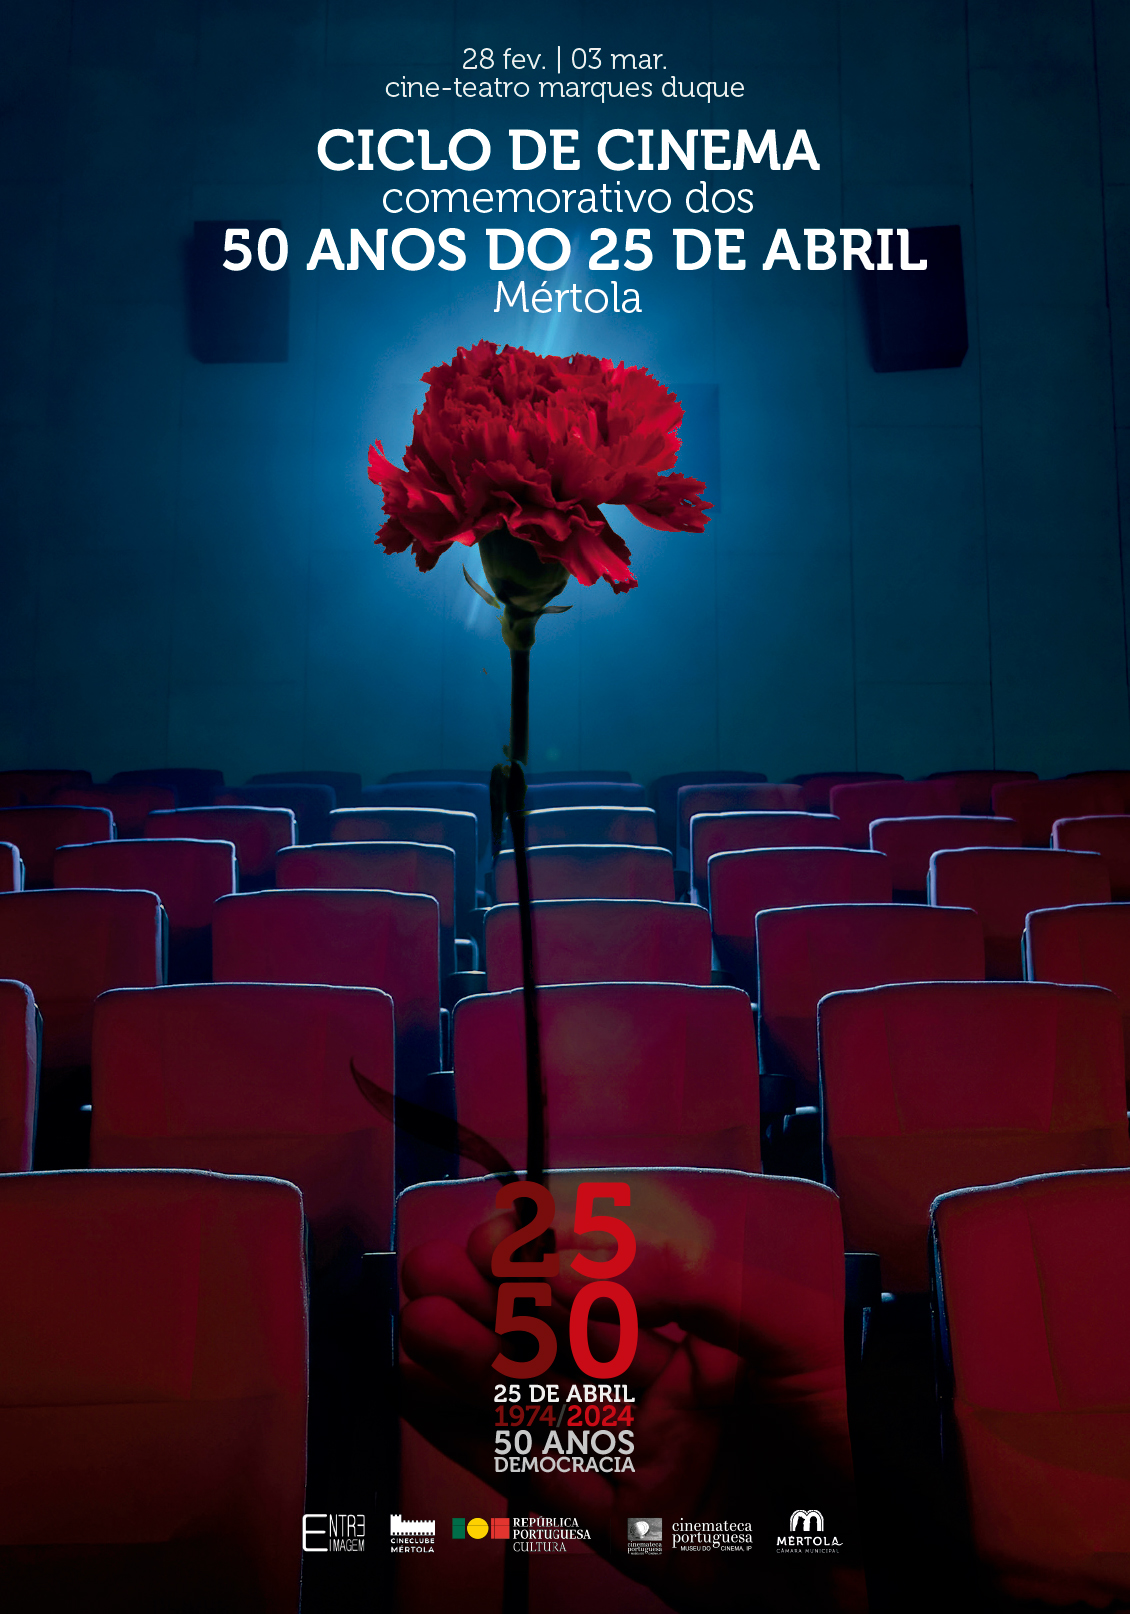 Capa Oficial do Evento Ciclo de Cinema: Imagens em Movimento – Cinema Português em Diálogo com o Cineclube de Mértola